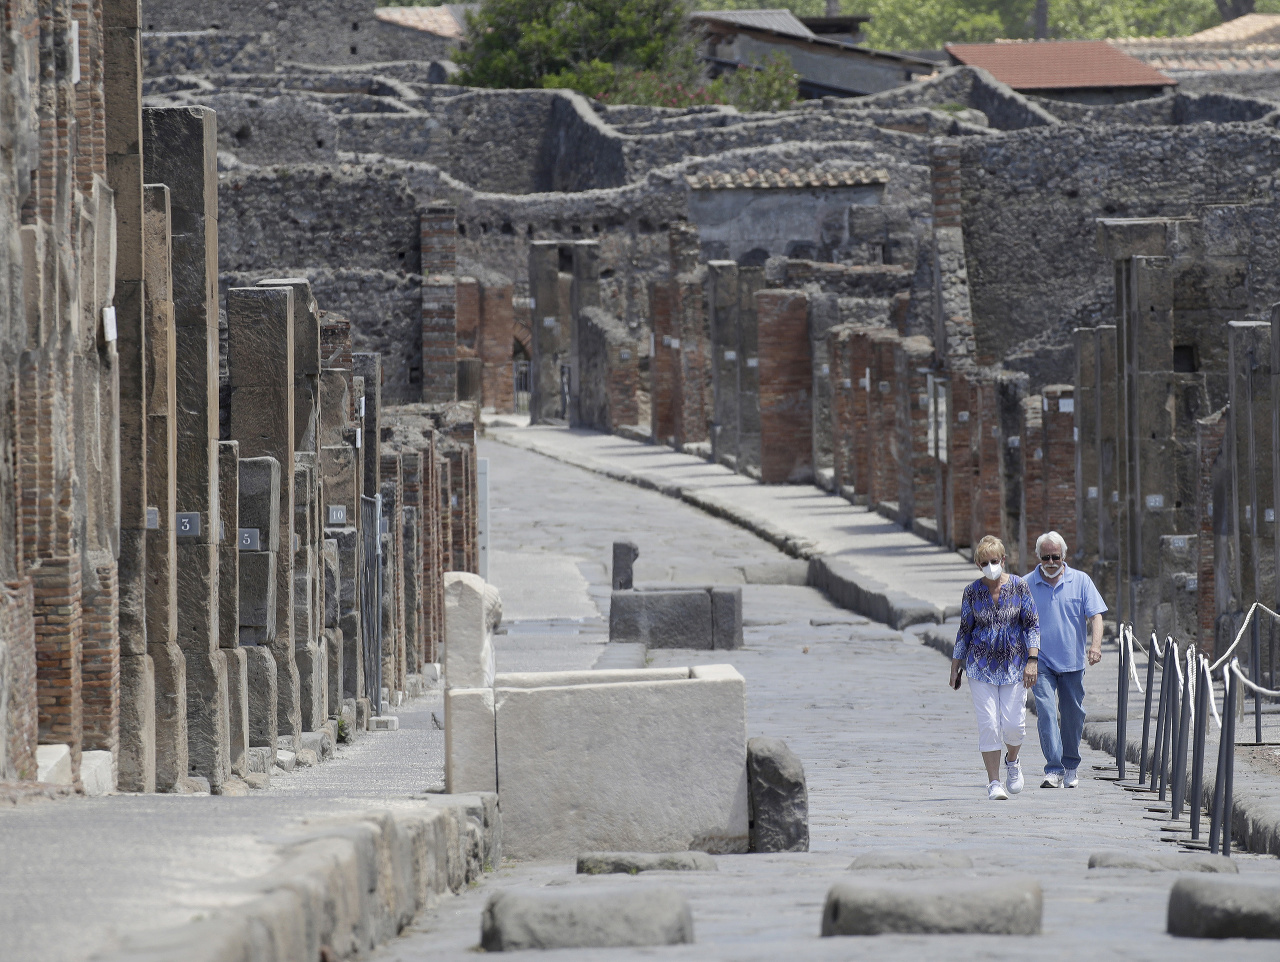 Američania Colleen a Marvin Hewsonovci kráčajú počas znovuotvorenia archeologického miesta v talianskych Pompejach neďaleko Neapola